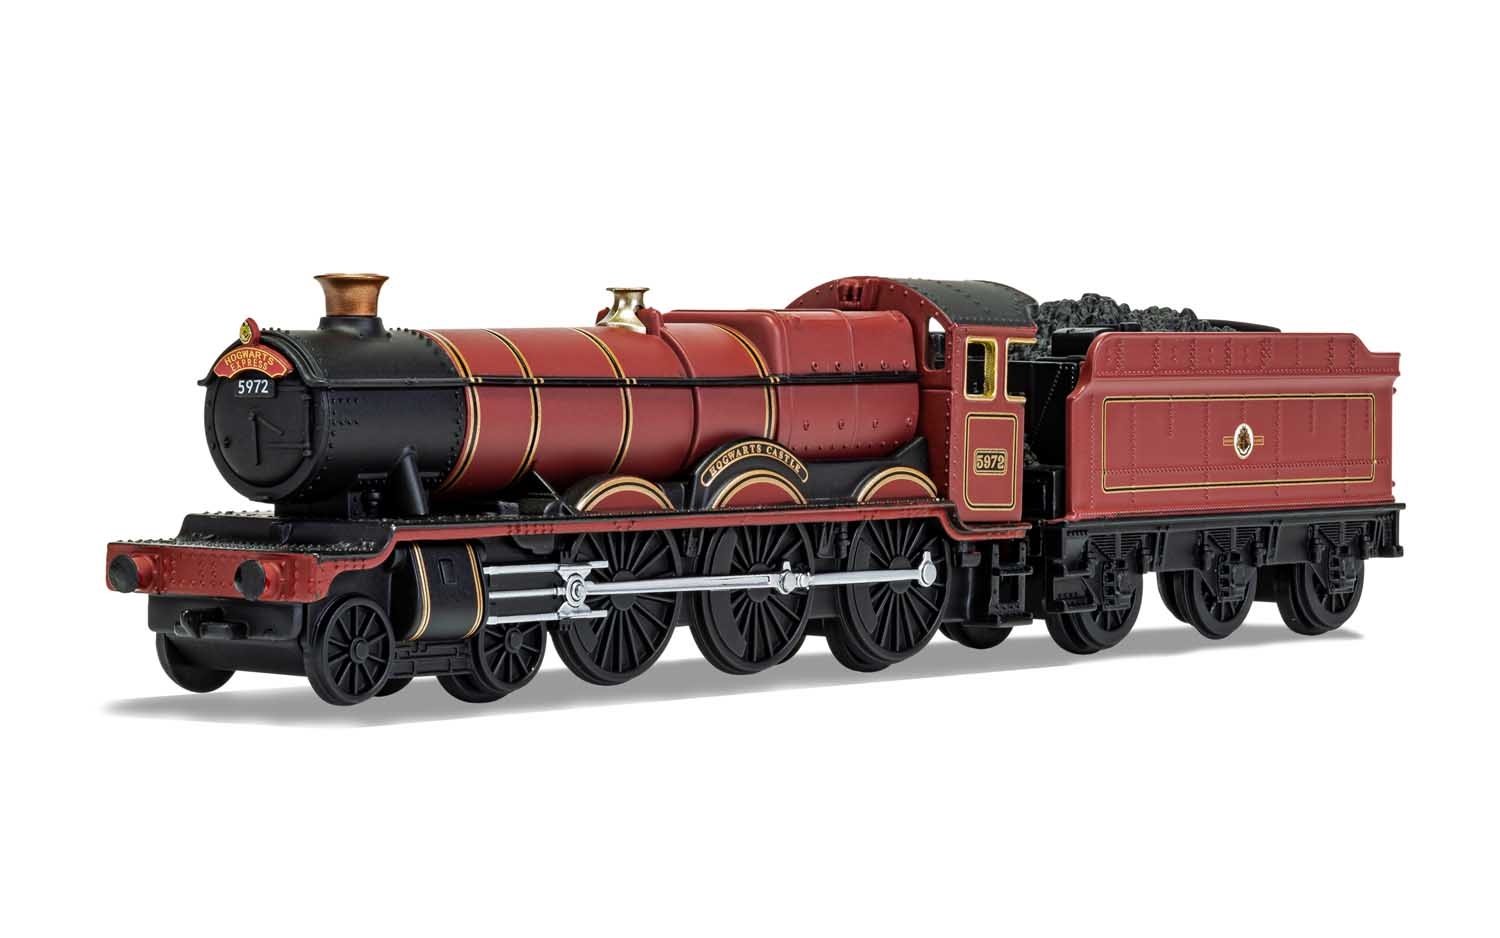 Corgi Hogwarts Express 5972 Die-cast Train Harry Potter CC99724 for sale online 